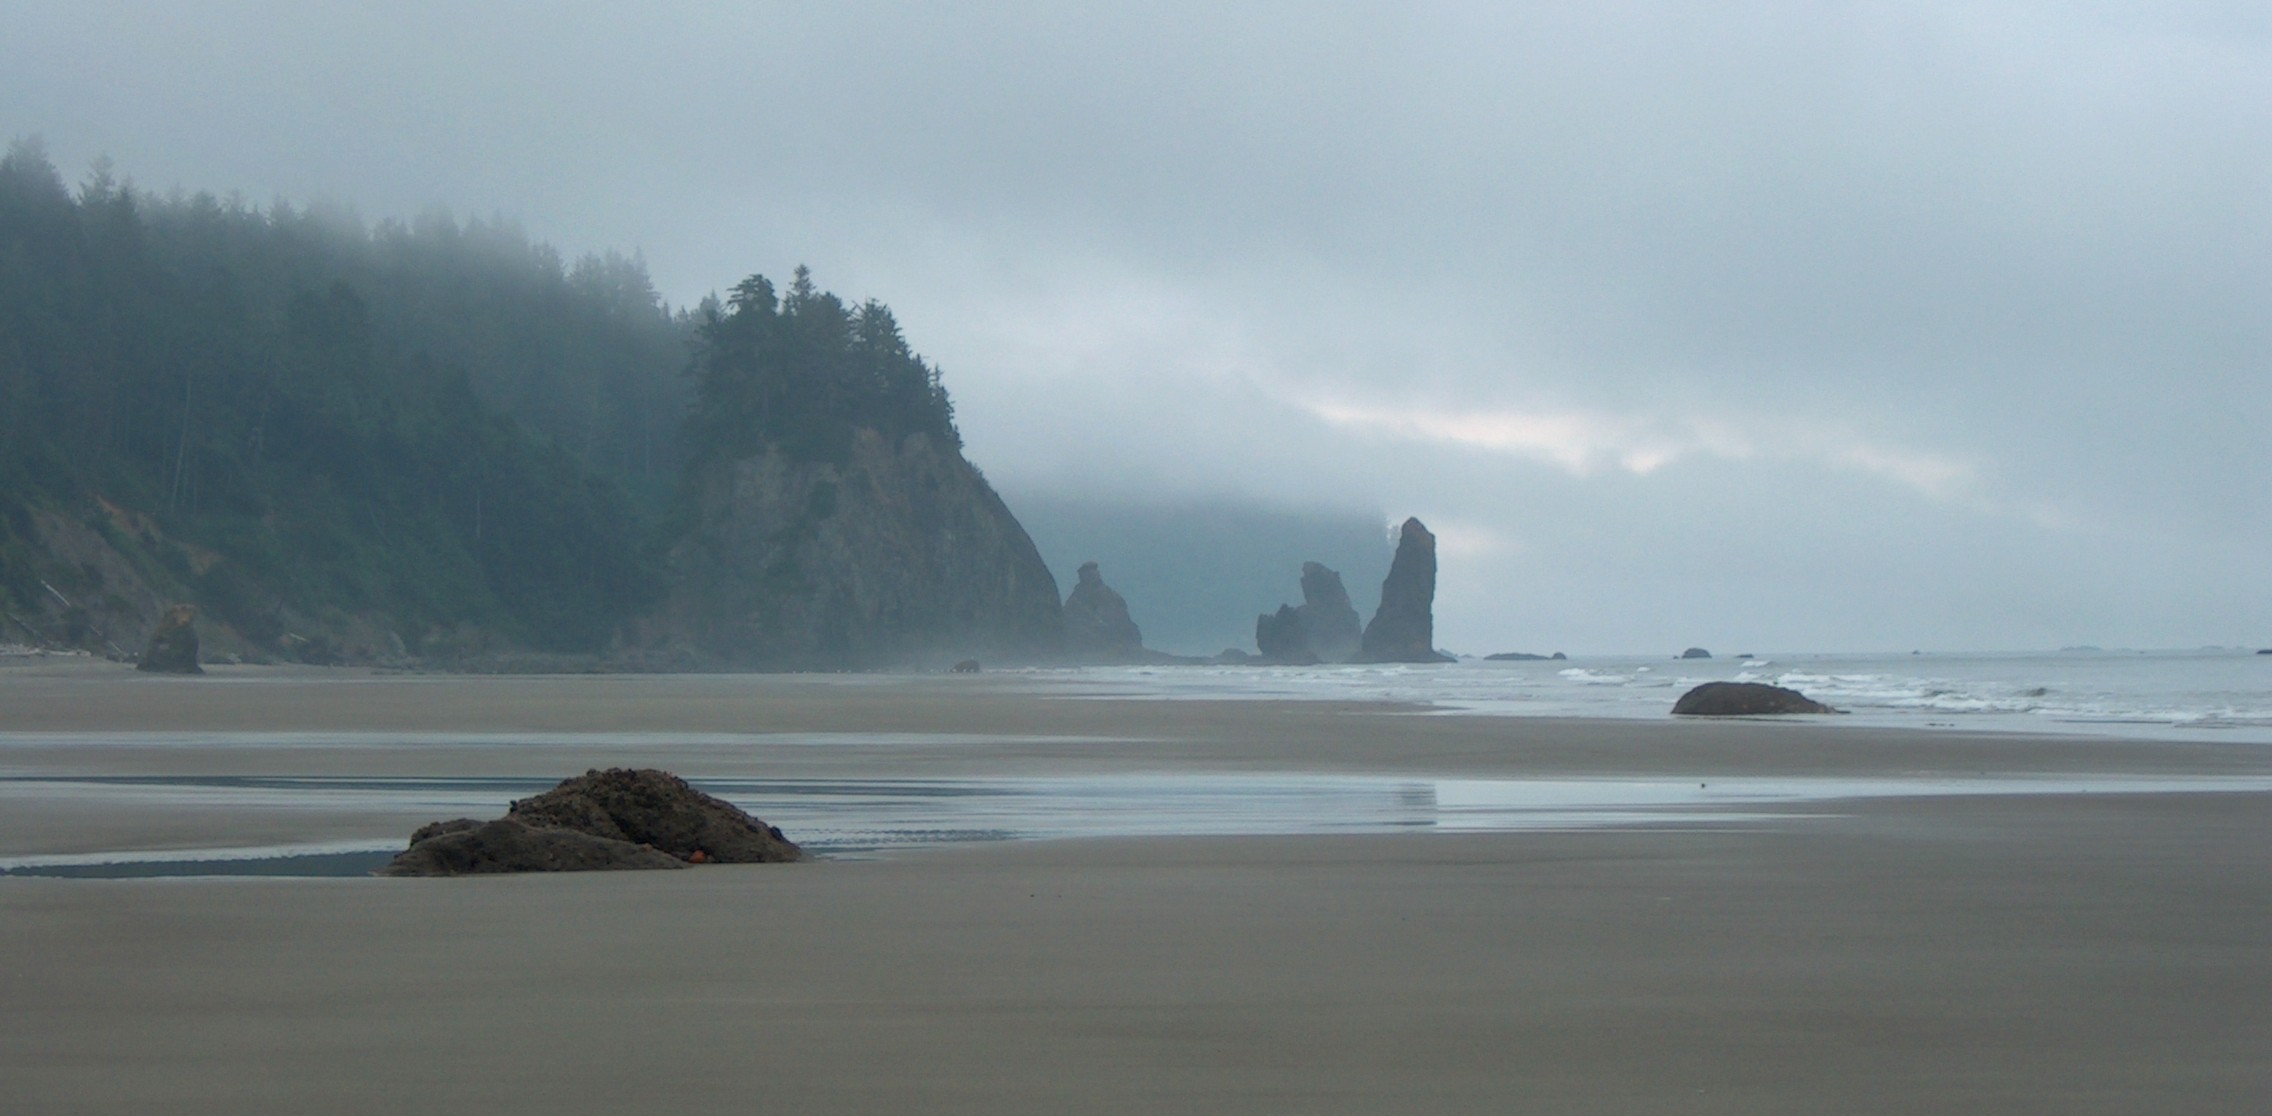 File:Misty Beach - wide shot (909117936).jpg - Wikimedia Commons